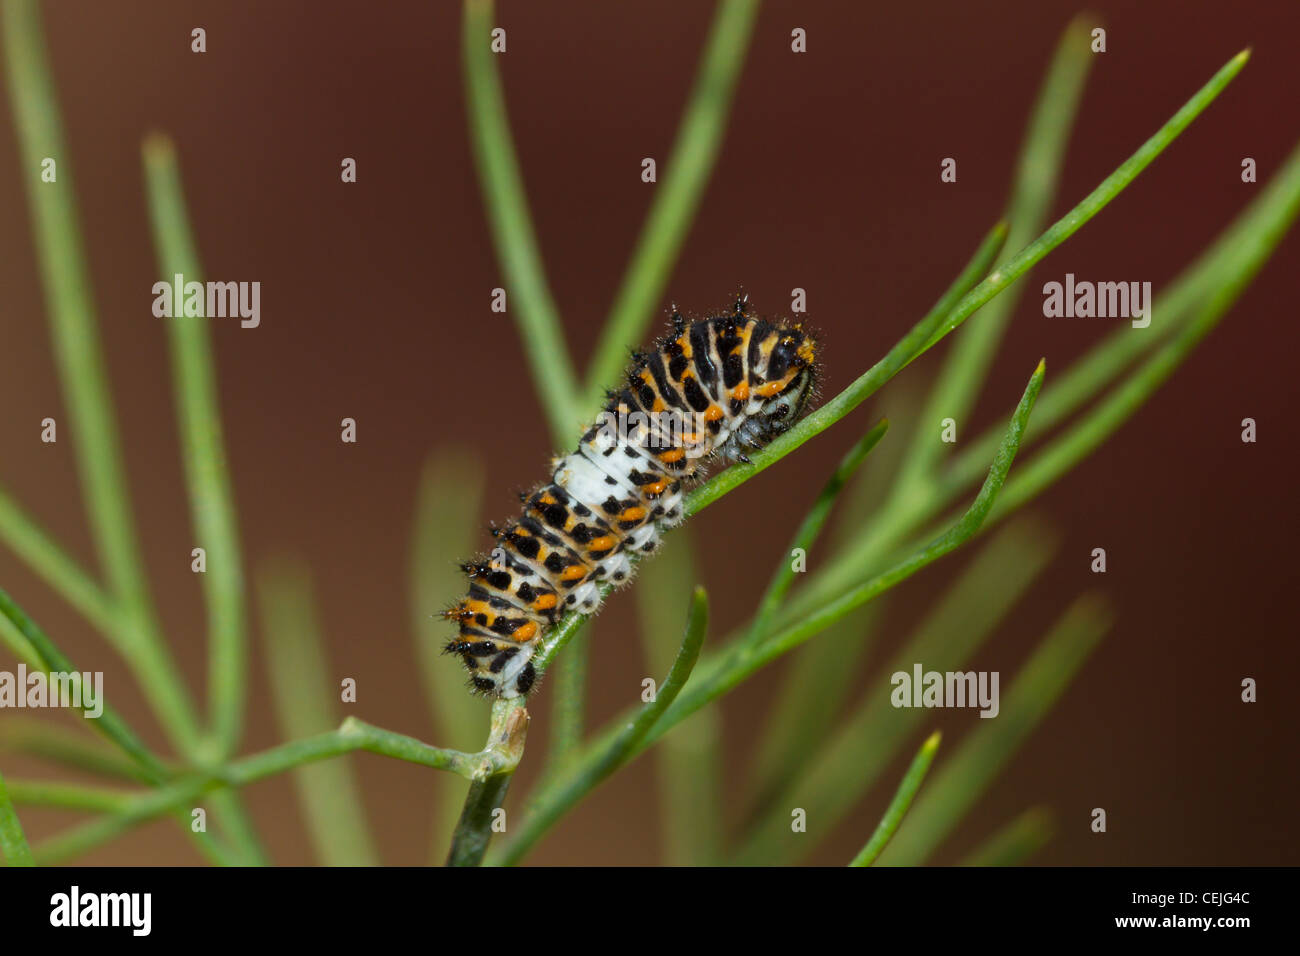 Schwalbenschwanz Raupe, Papilio machaon, Old World swallowtail caterpillar Stock Photo